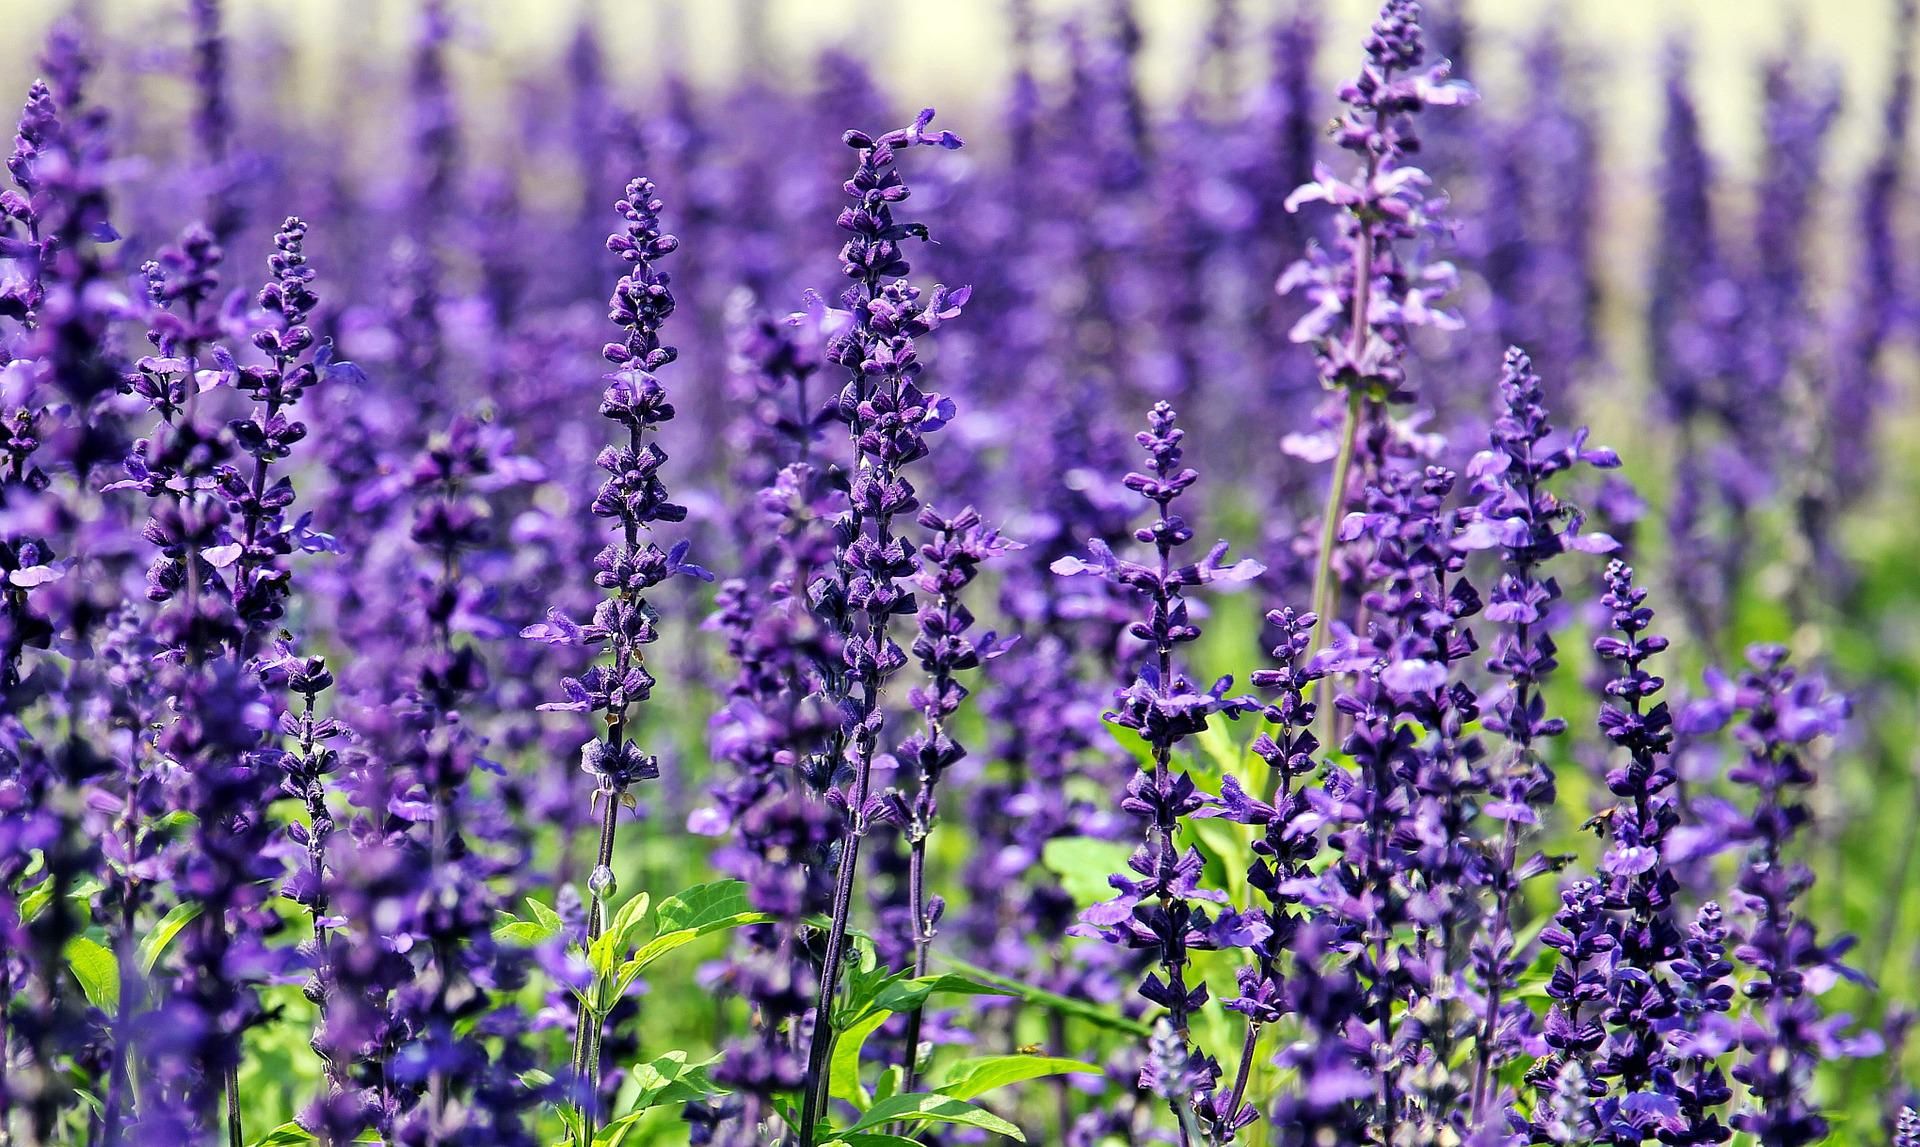 Lavender, Tanaman Berkhasiat yang Dimanfaatkan Sejak Ribuan Tahun Lalu -  Semua Halaman - National Geographic